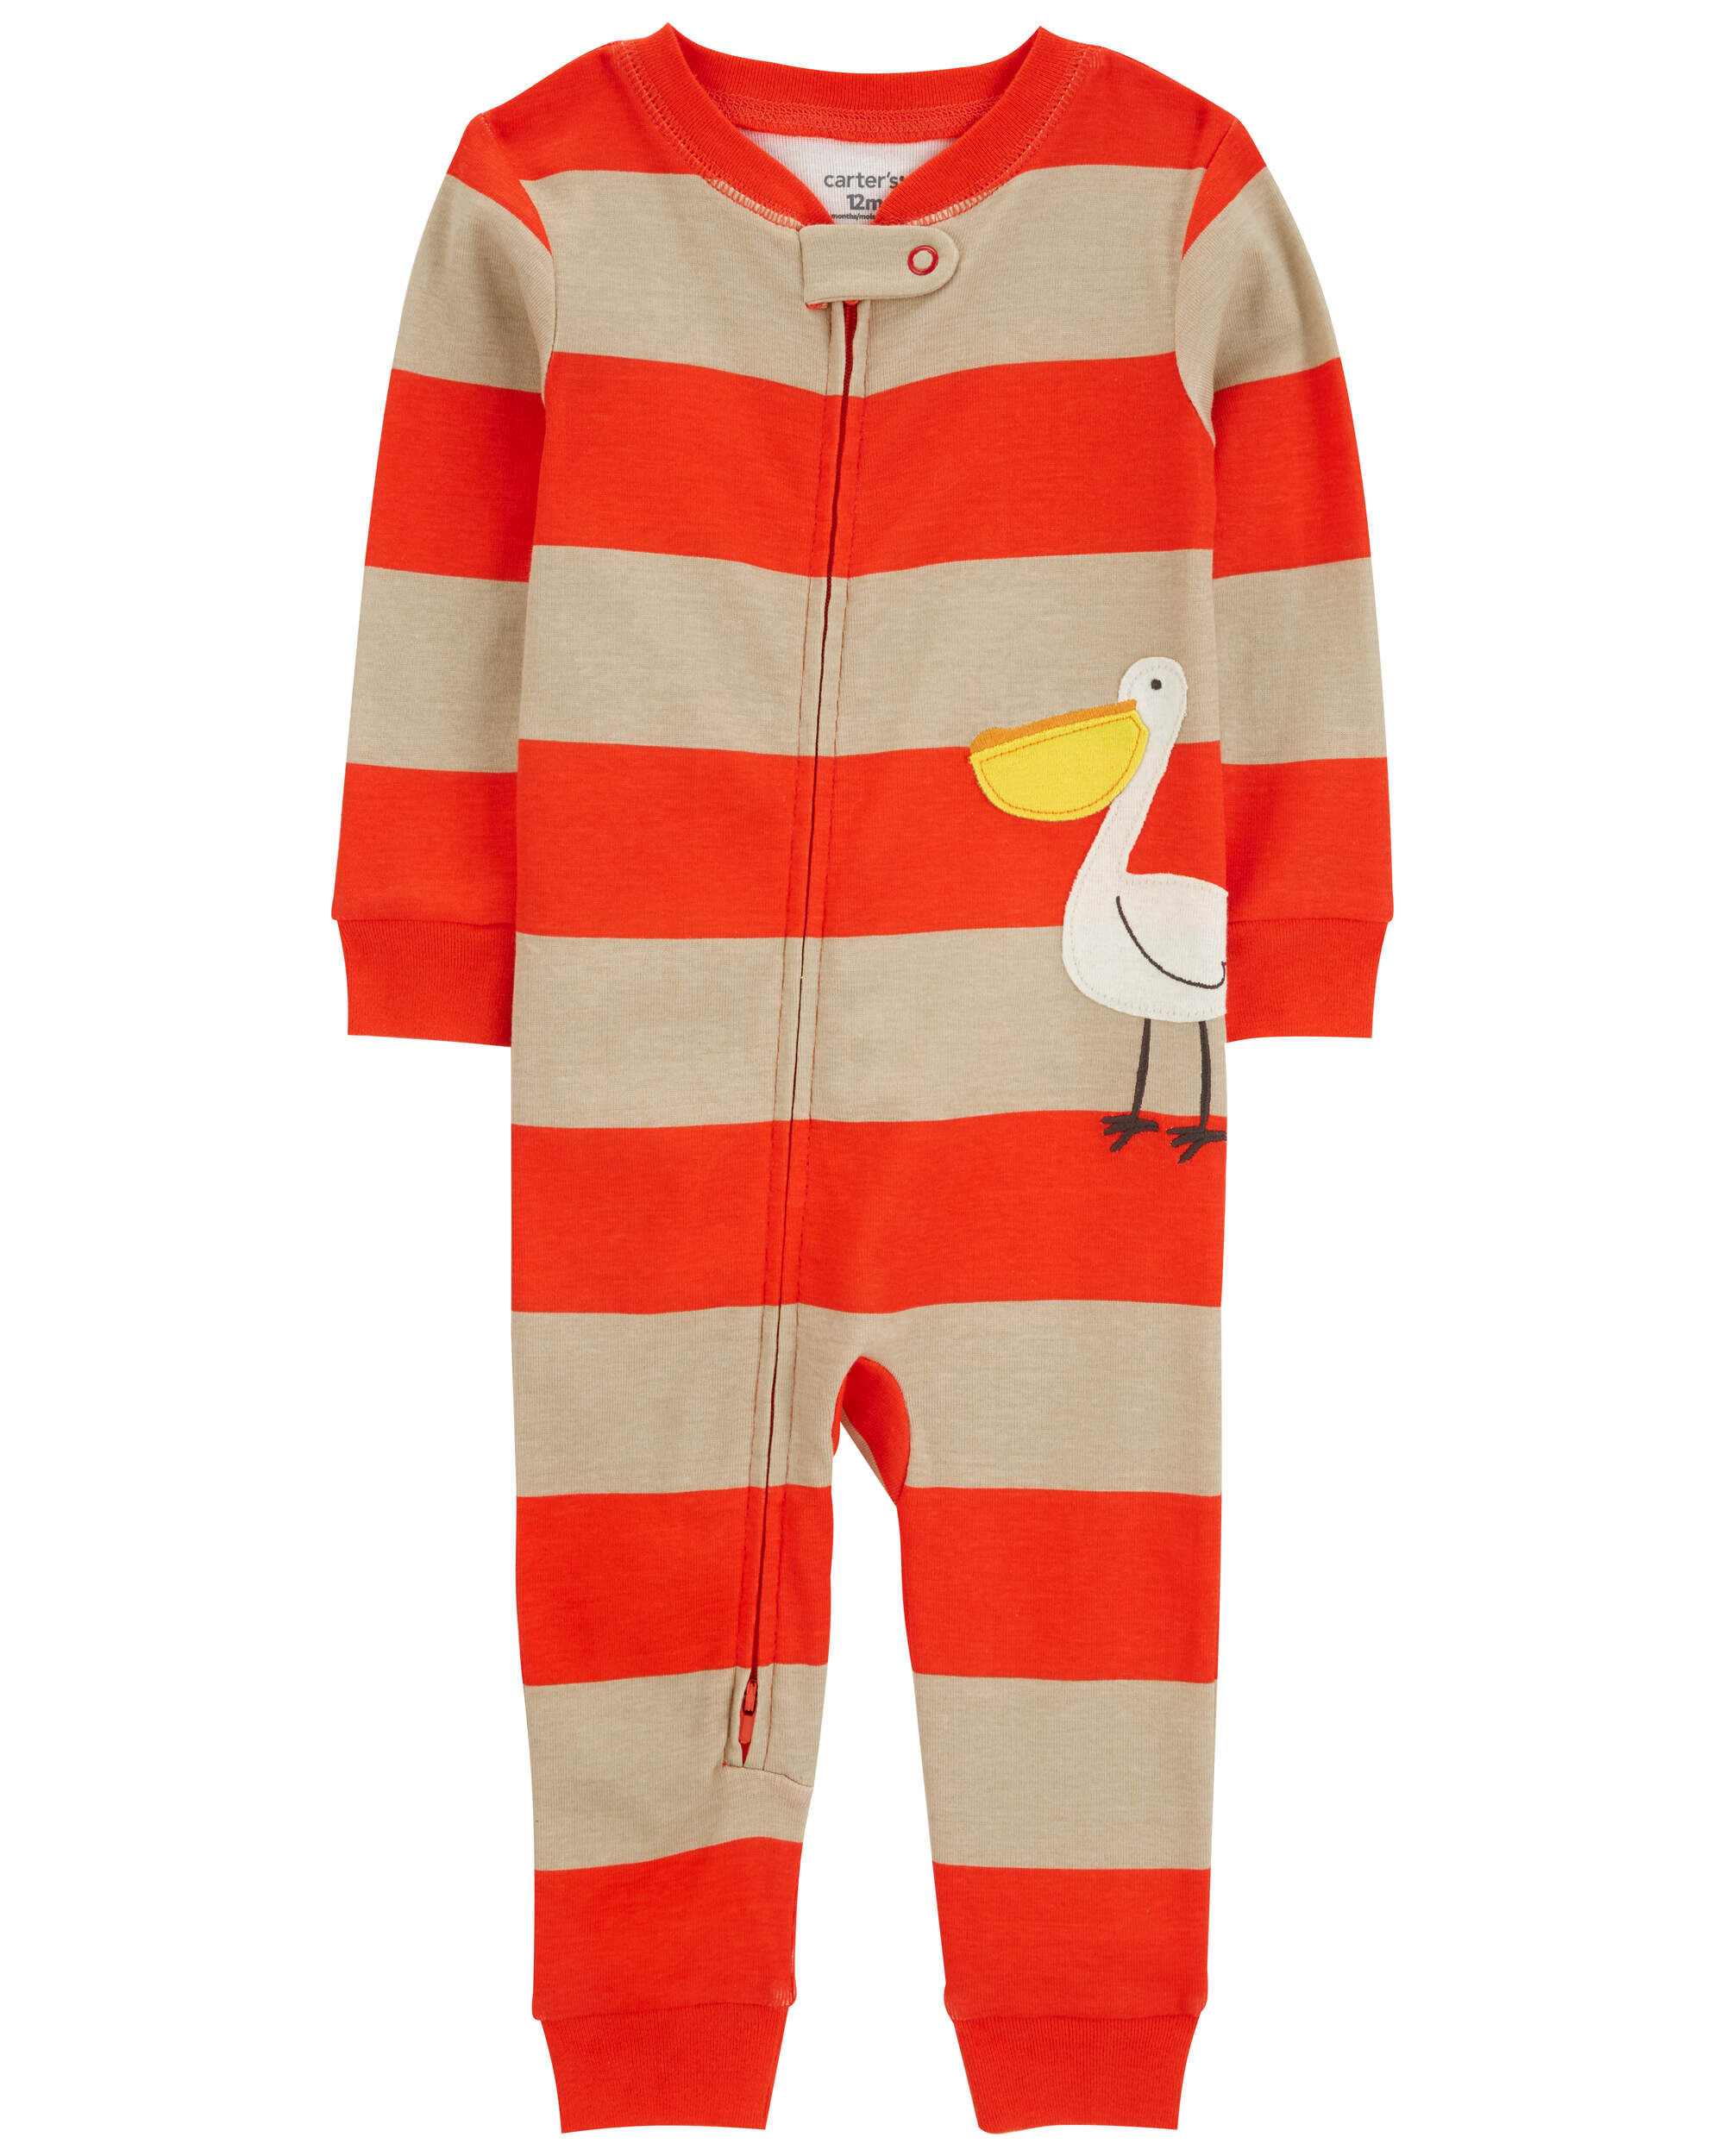 Цельная пижама без стопы из 100 % плотного хлопка для малышей-хамелеона Carter's